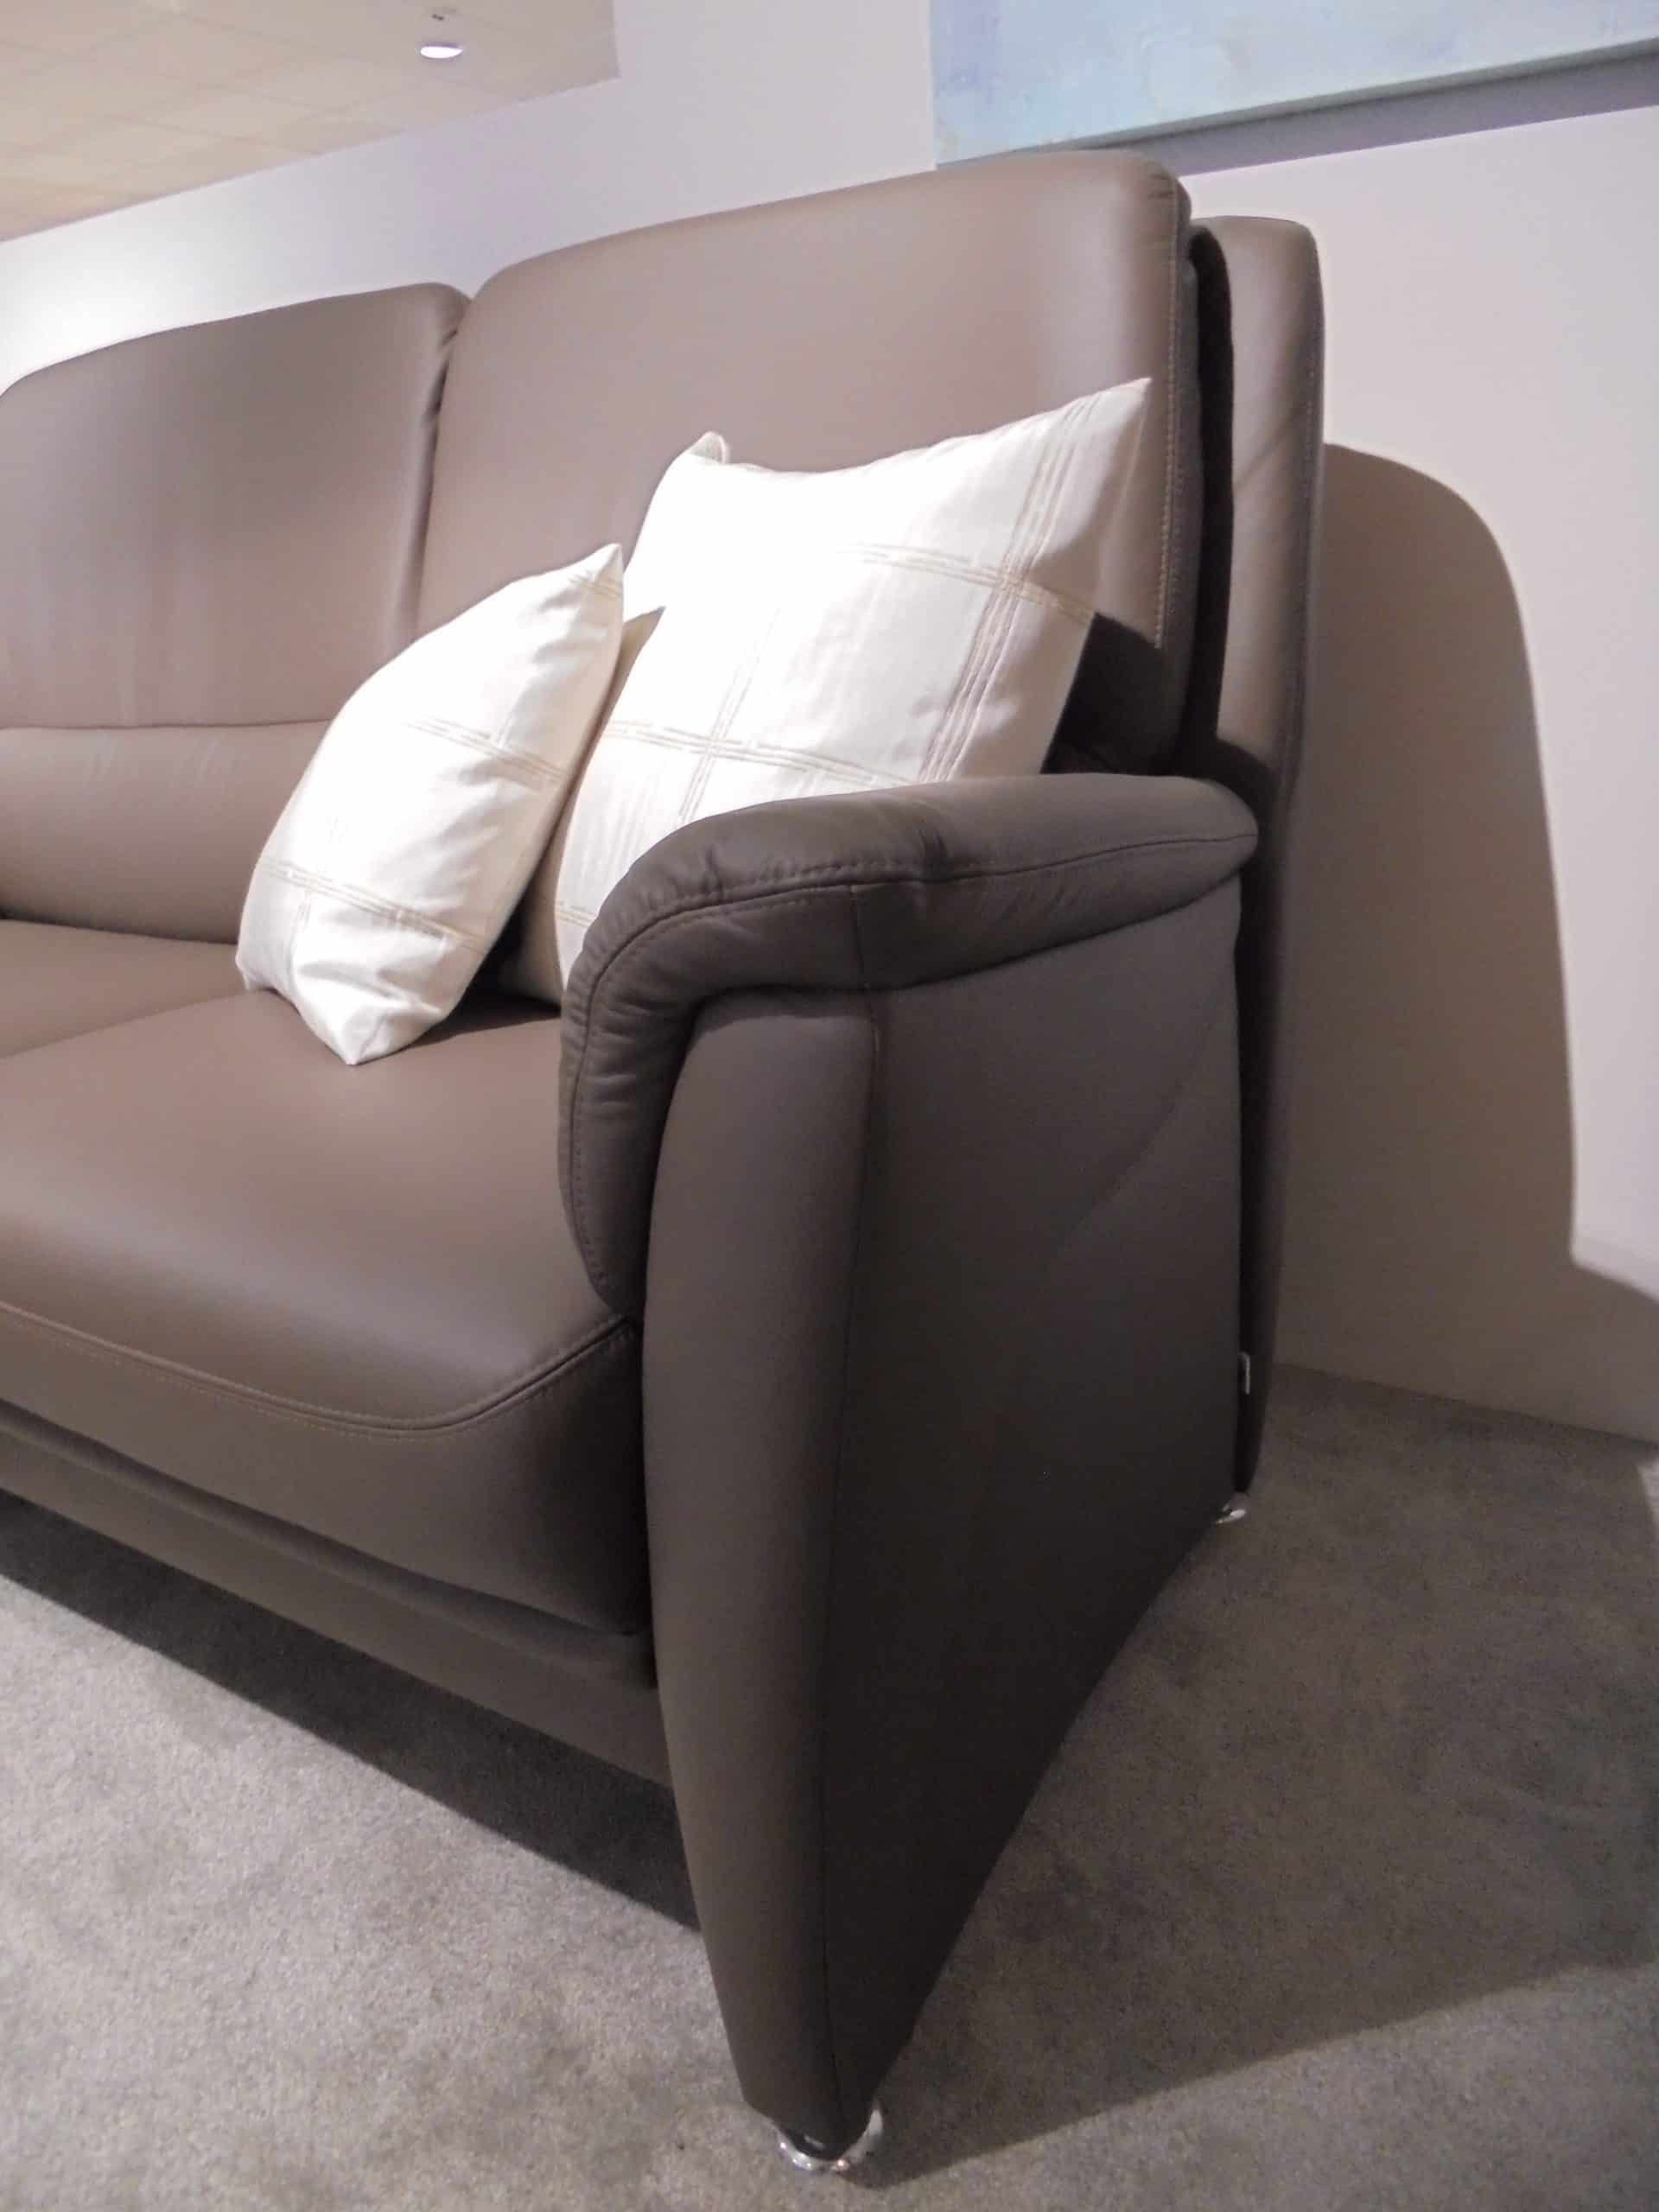 Im Möbelhaus Thiex gibt es derzeit einen Abverkauf der Polstergarnitur Premium 2400 mit Lederbezug. Die Garnitur besteht aus einem 3-Sitzer, einem 2,5-Sitzer und einem Sessel. Alle Teile sind um 31% reduziert.